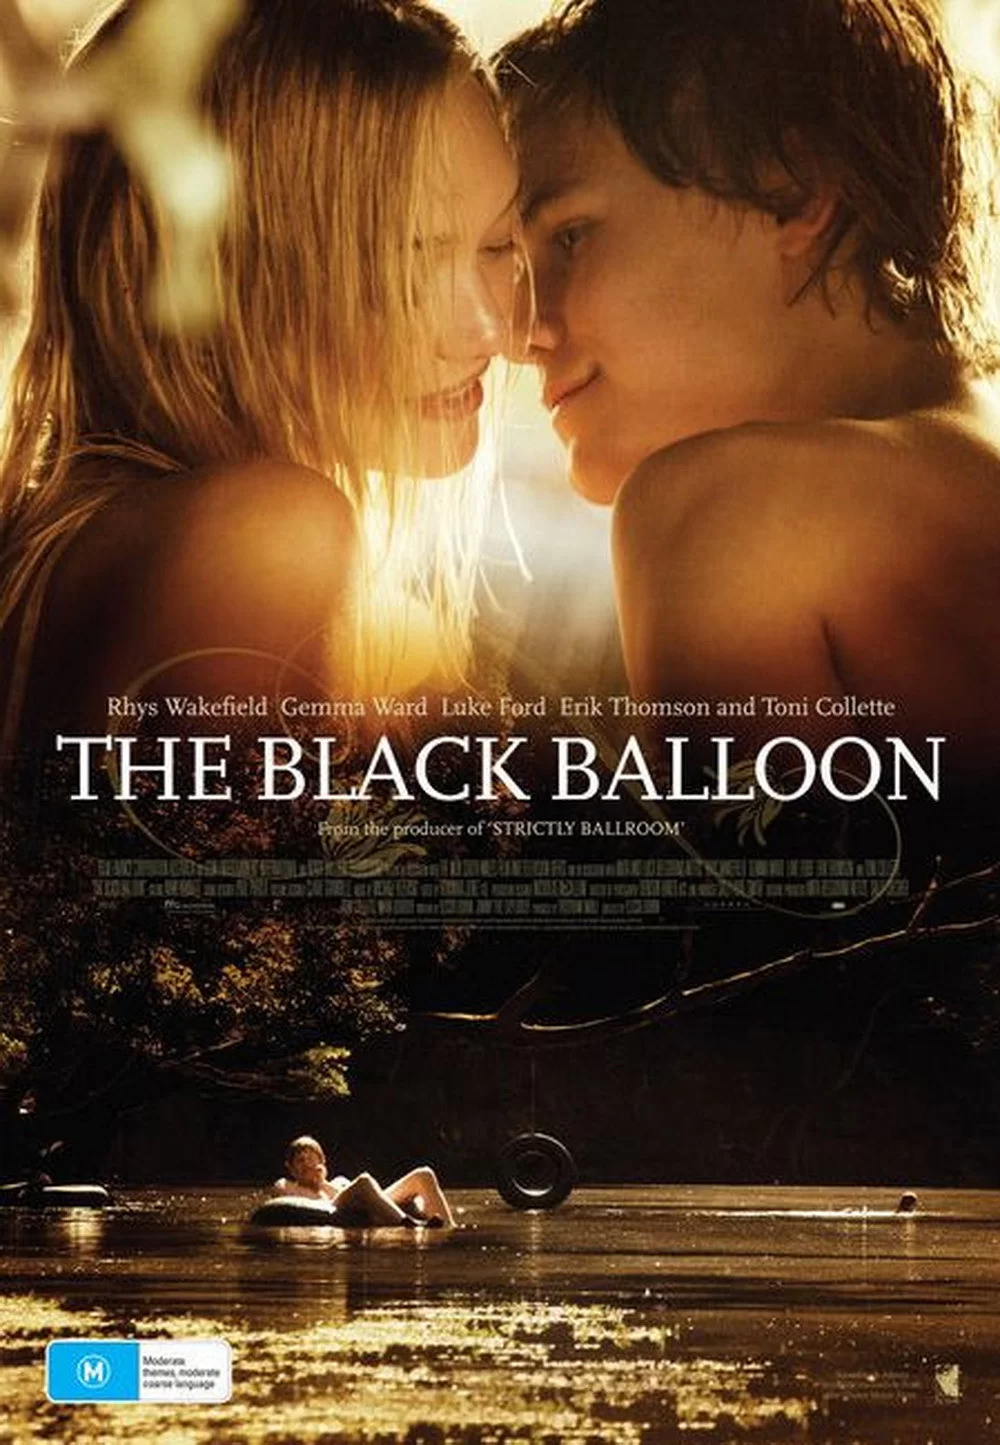 黑气球 蓝光原盘下载+高清MKV版/吾爱无悔 / 黑汽球 2008 The Black Balloon 22.4G